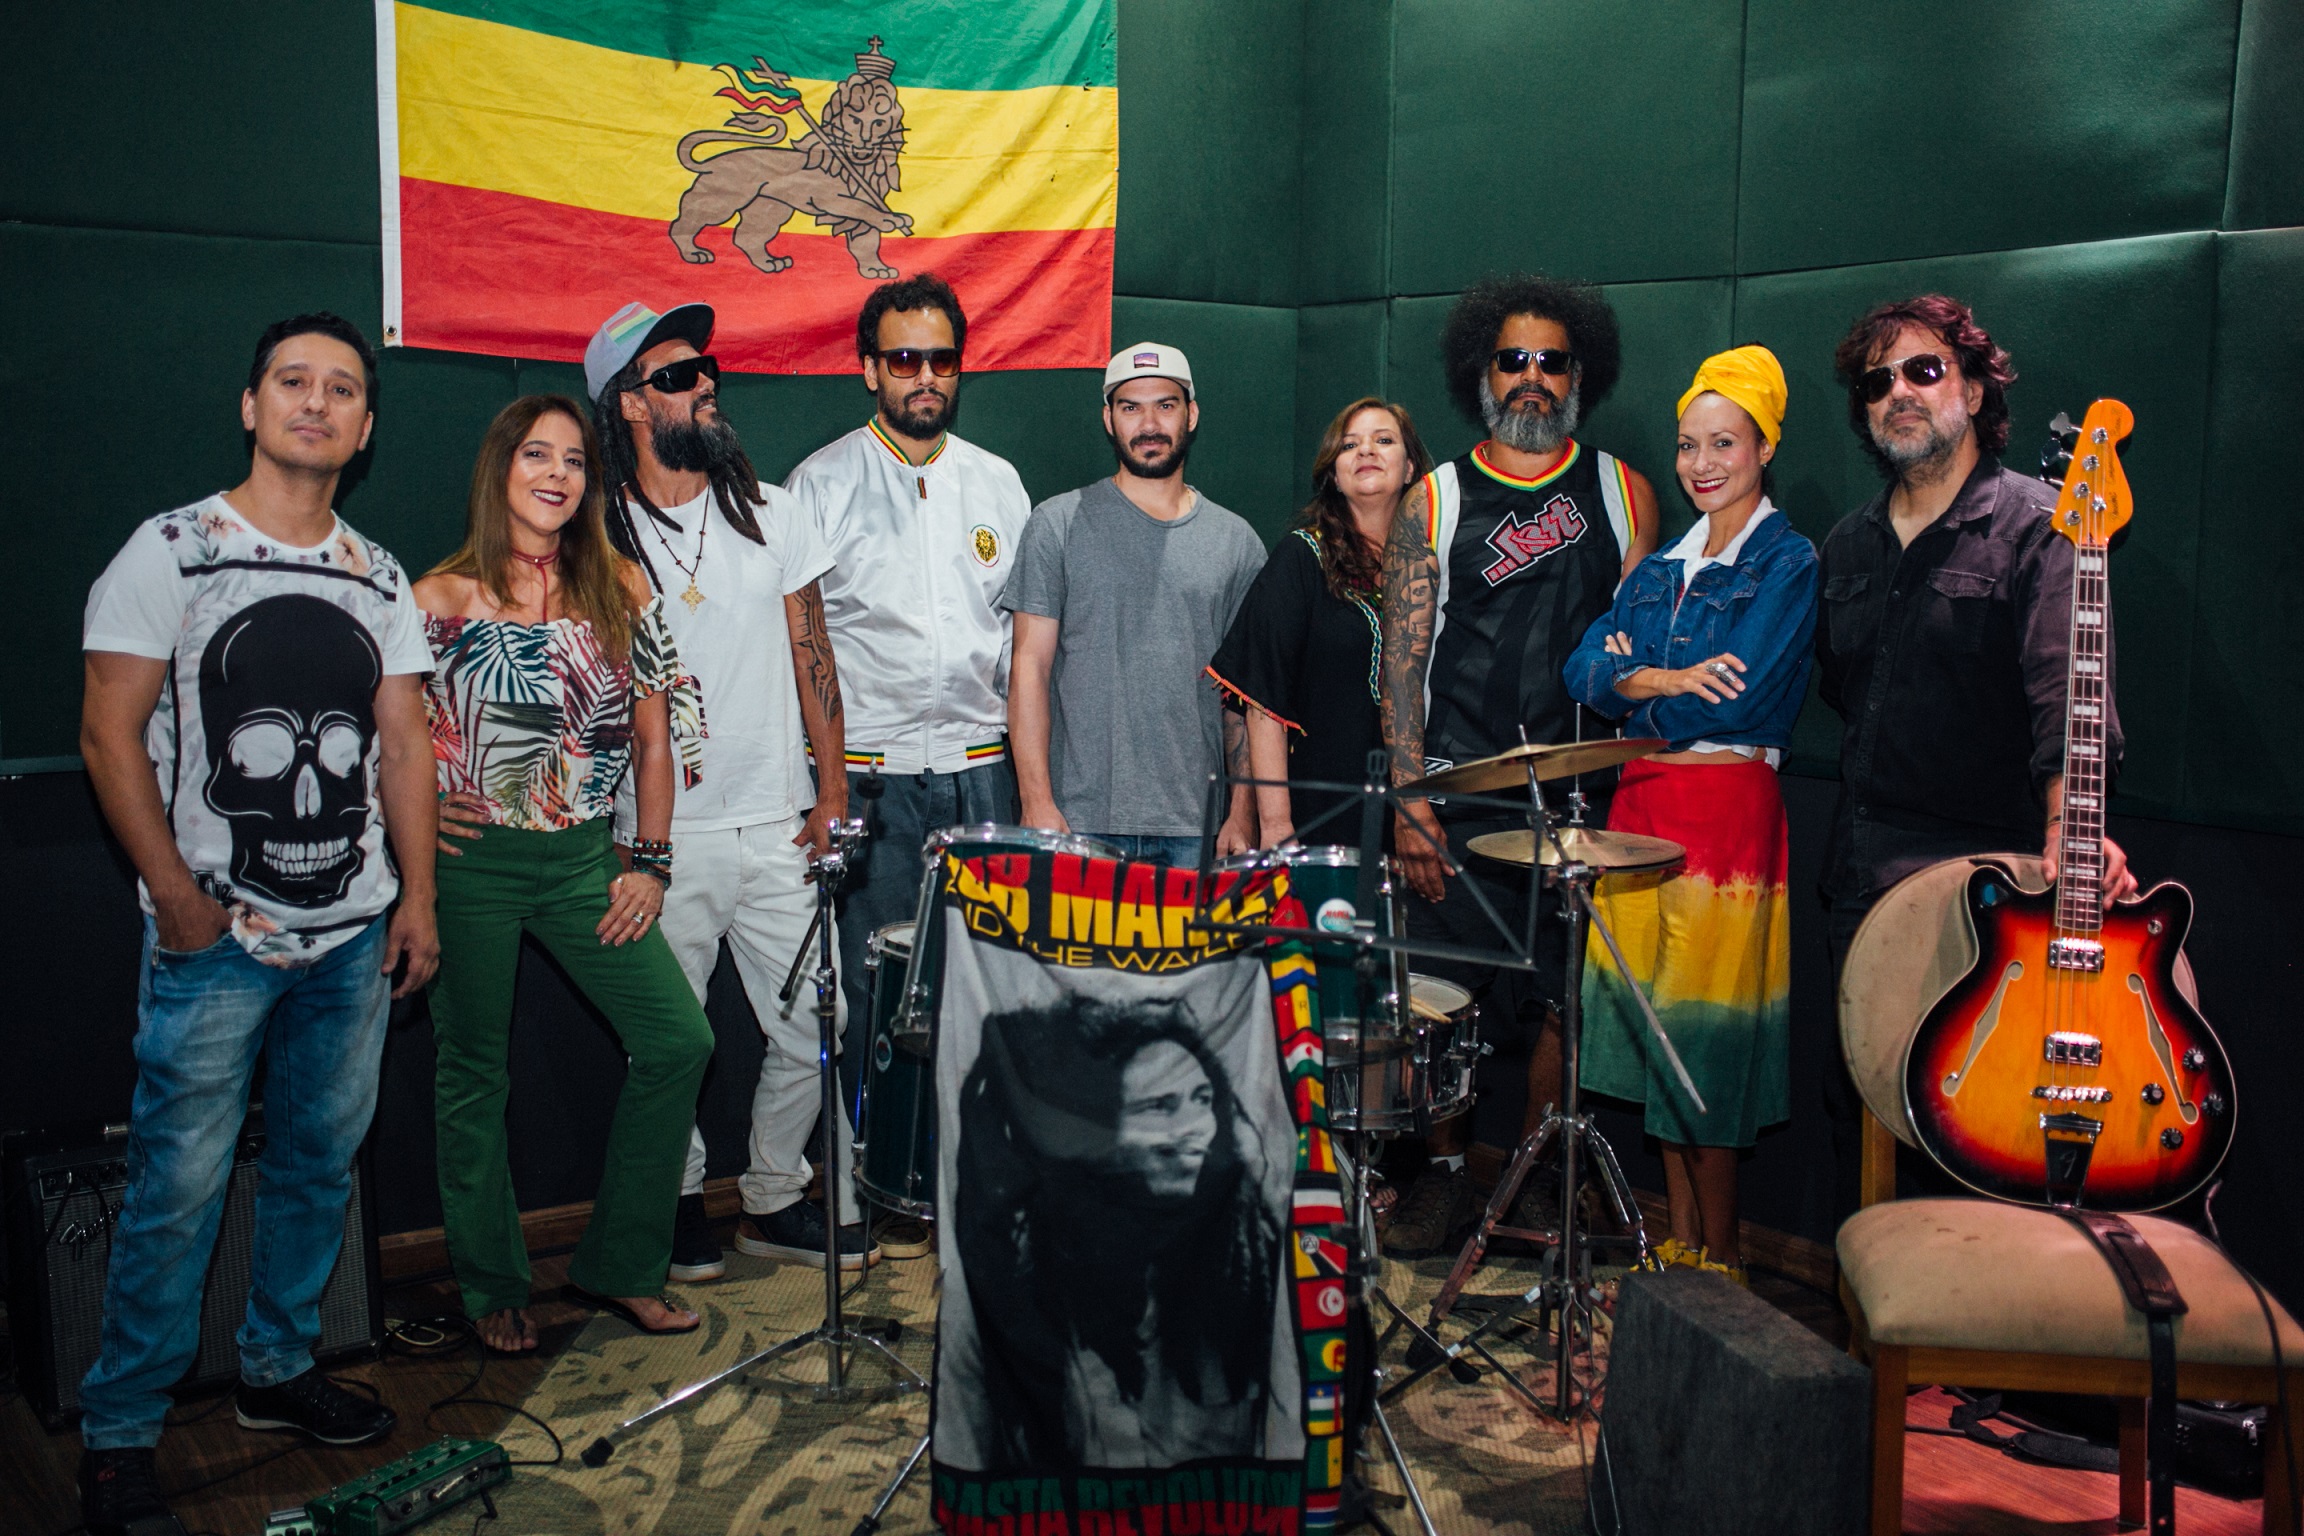 Show de reggae em Goiânia com a banda Mandingaman